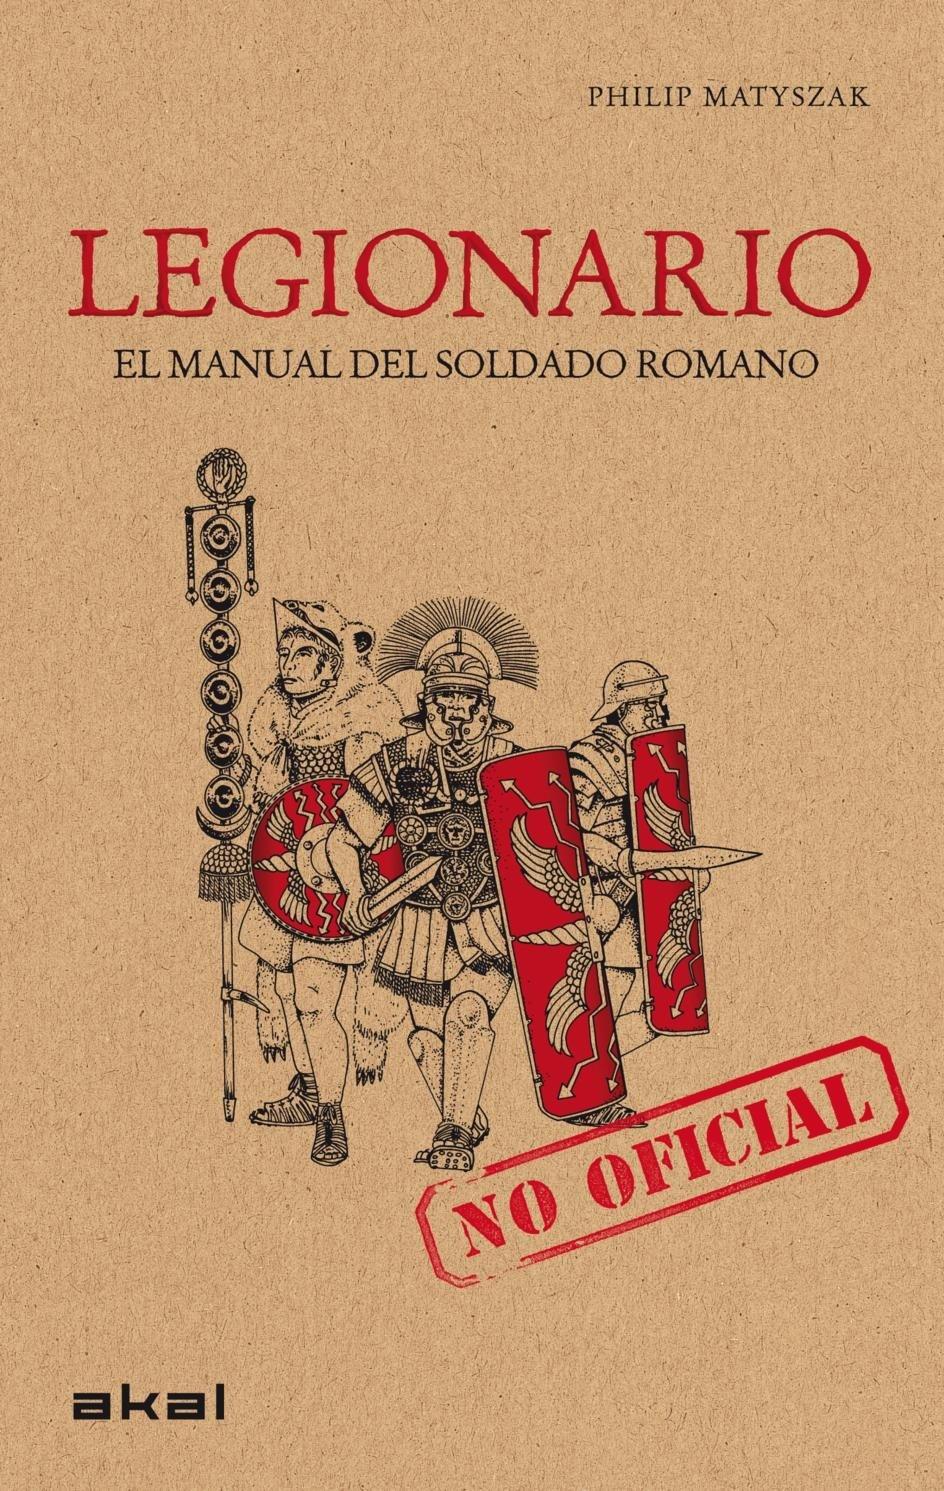 Legionario. El manual del soldado romano "(No oficial)"